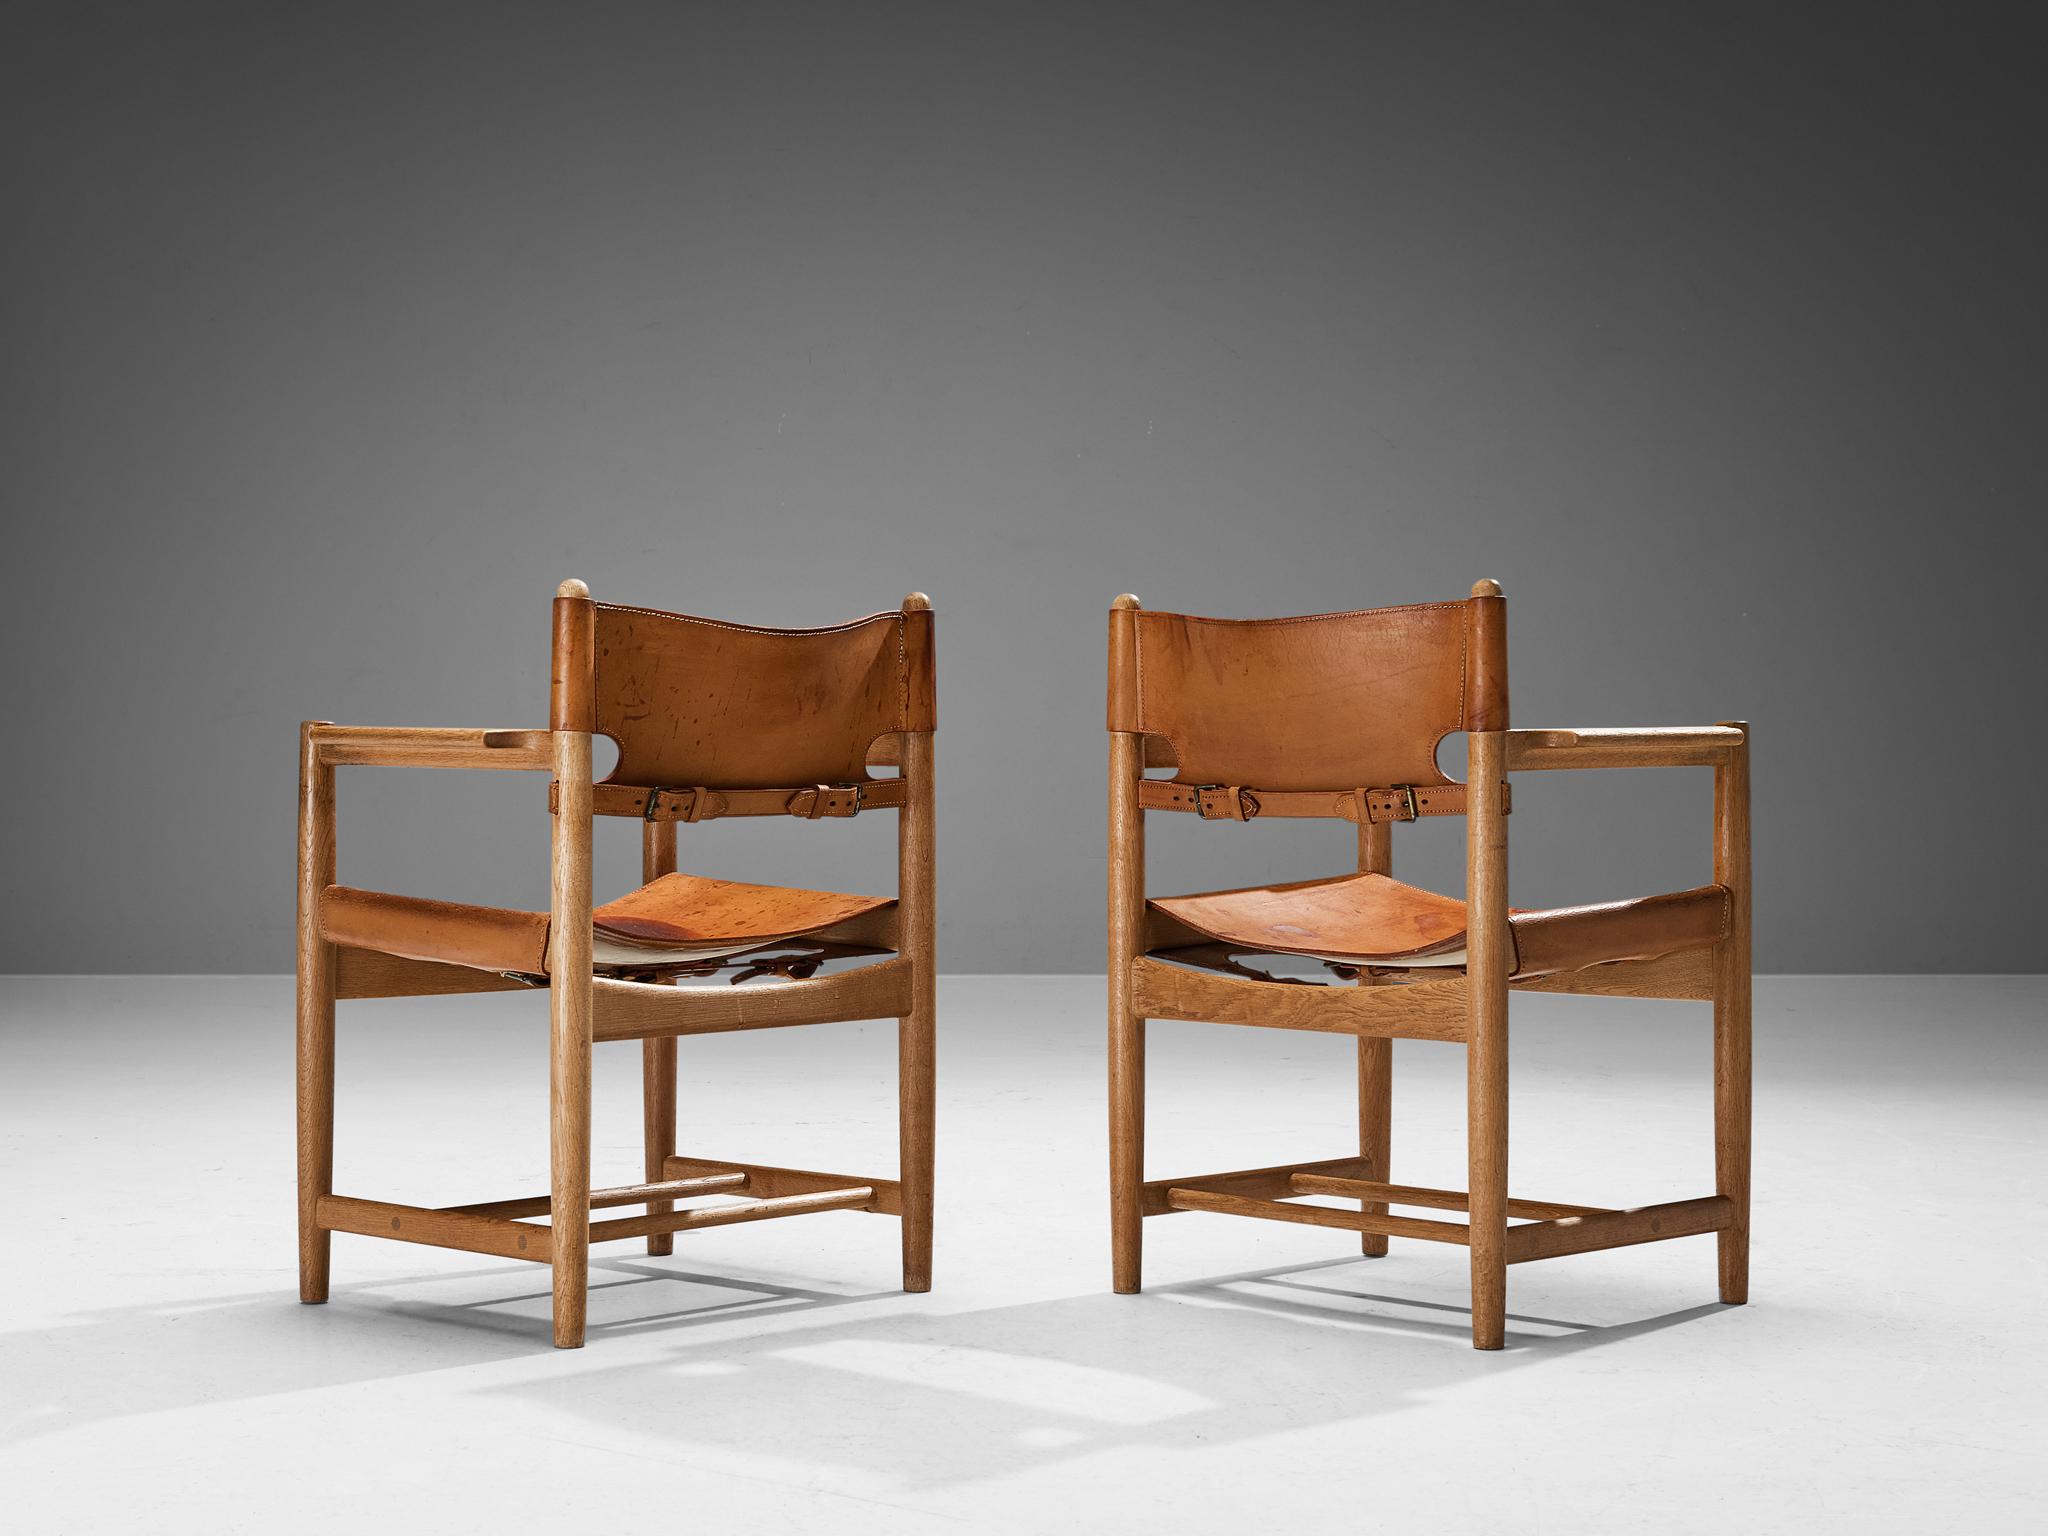 Børge Mogensen pour Fredericia Stolefabrik, paire de fauteuils modèle 3237, chêne, cuir, Danemark, 1964

Cette paire de fauteuils rappelle les classiques 